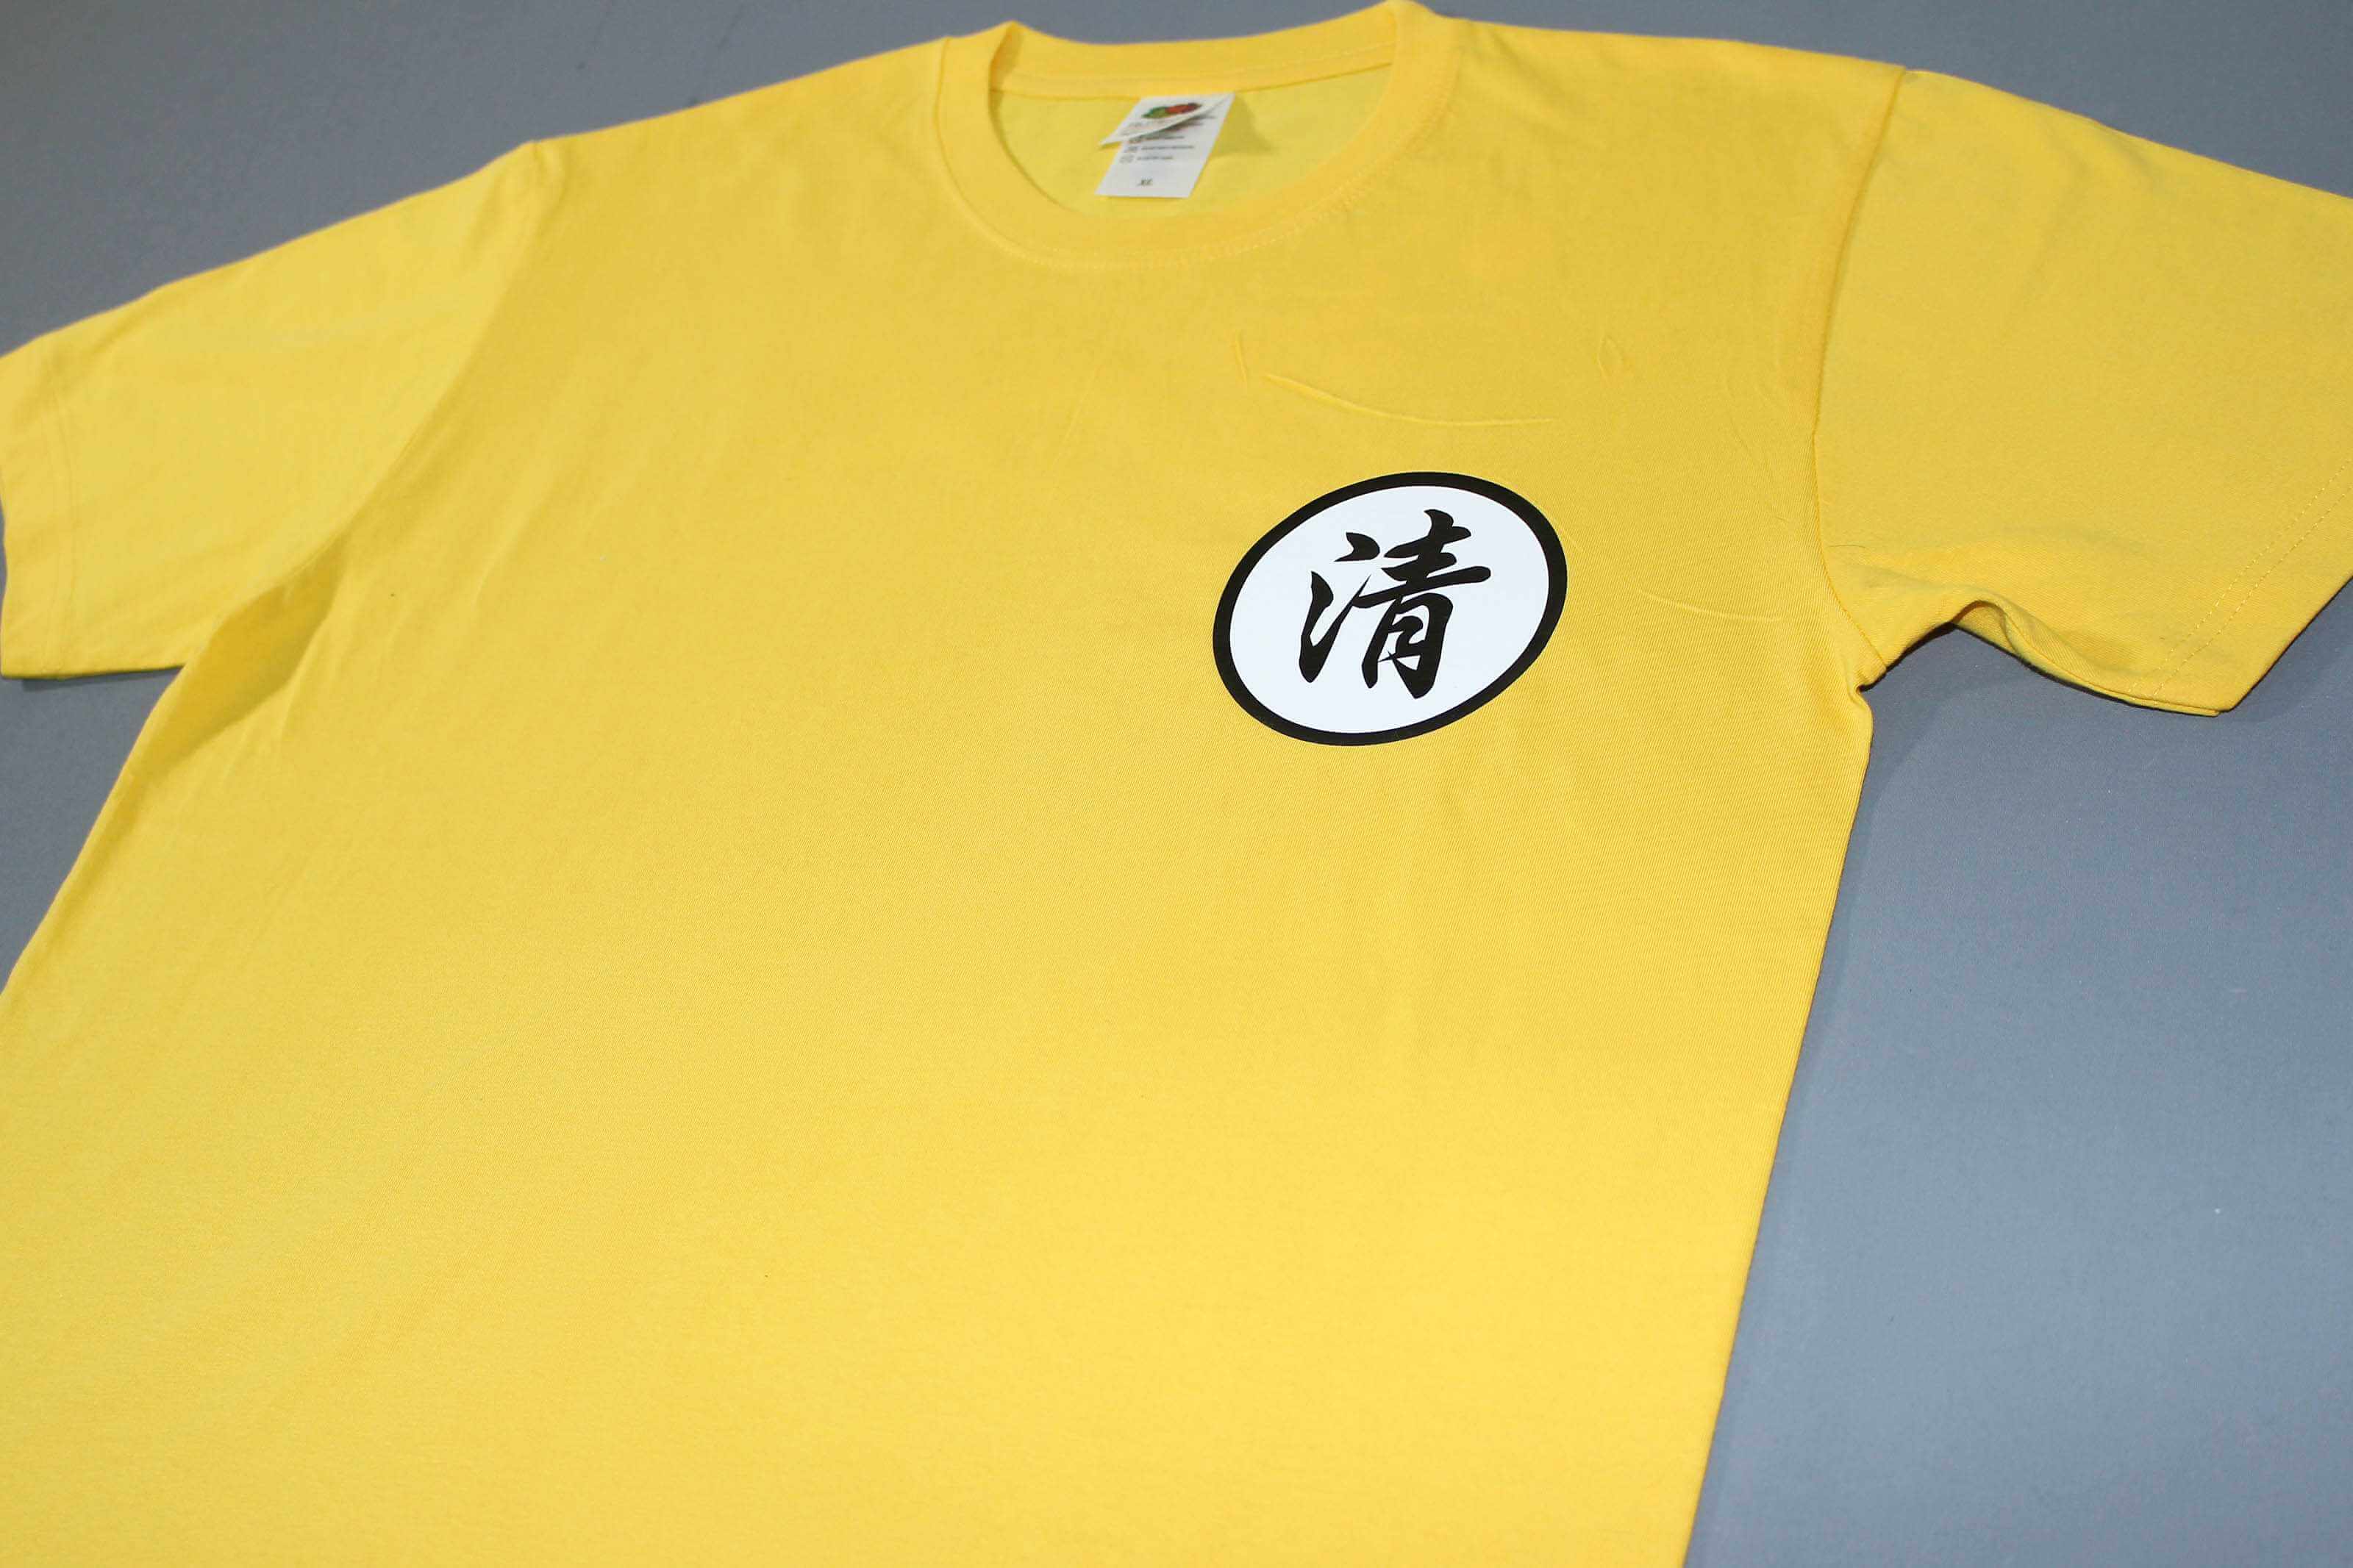 客製化T恤- 清-黃龍 客製化T恤的第1張圖(客製化公司制服、班服製作、團體服製作等示意或作品圖)